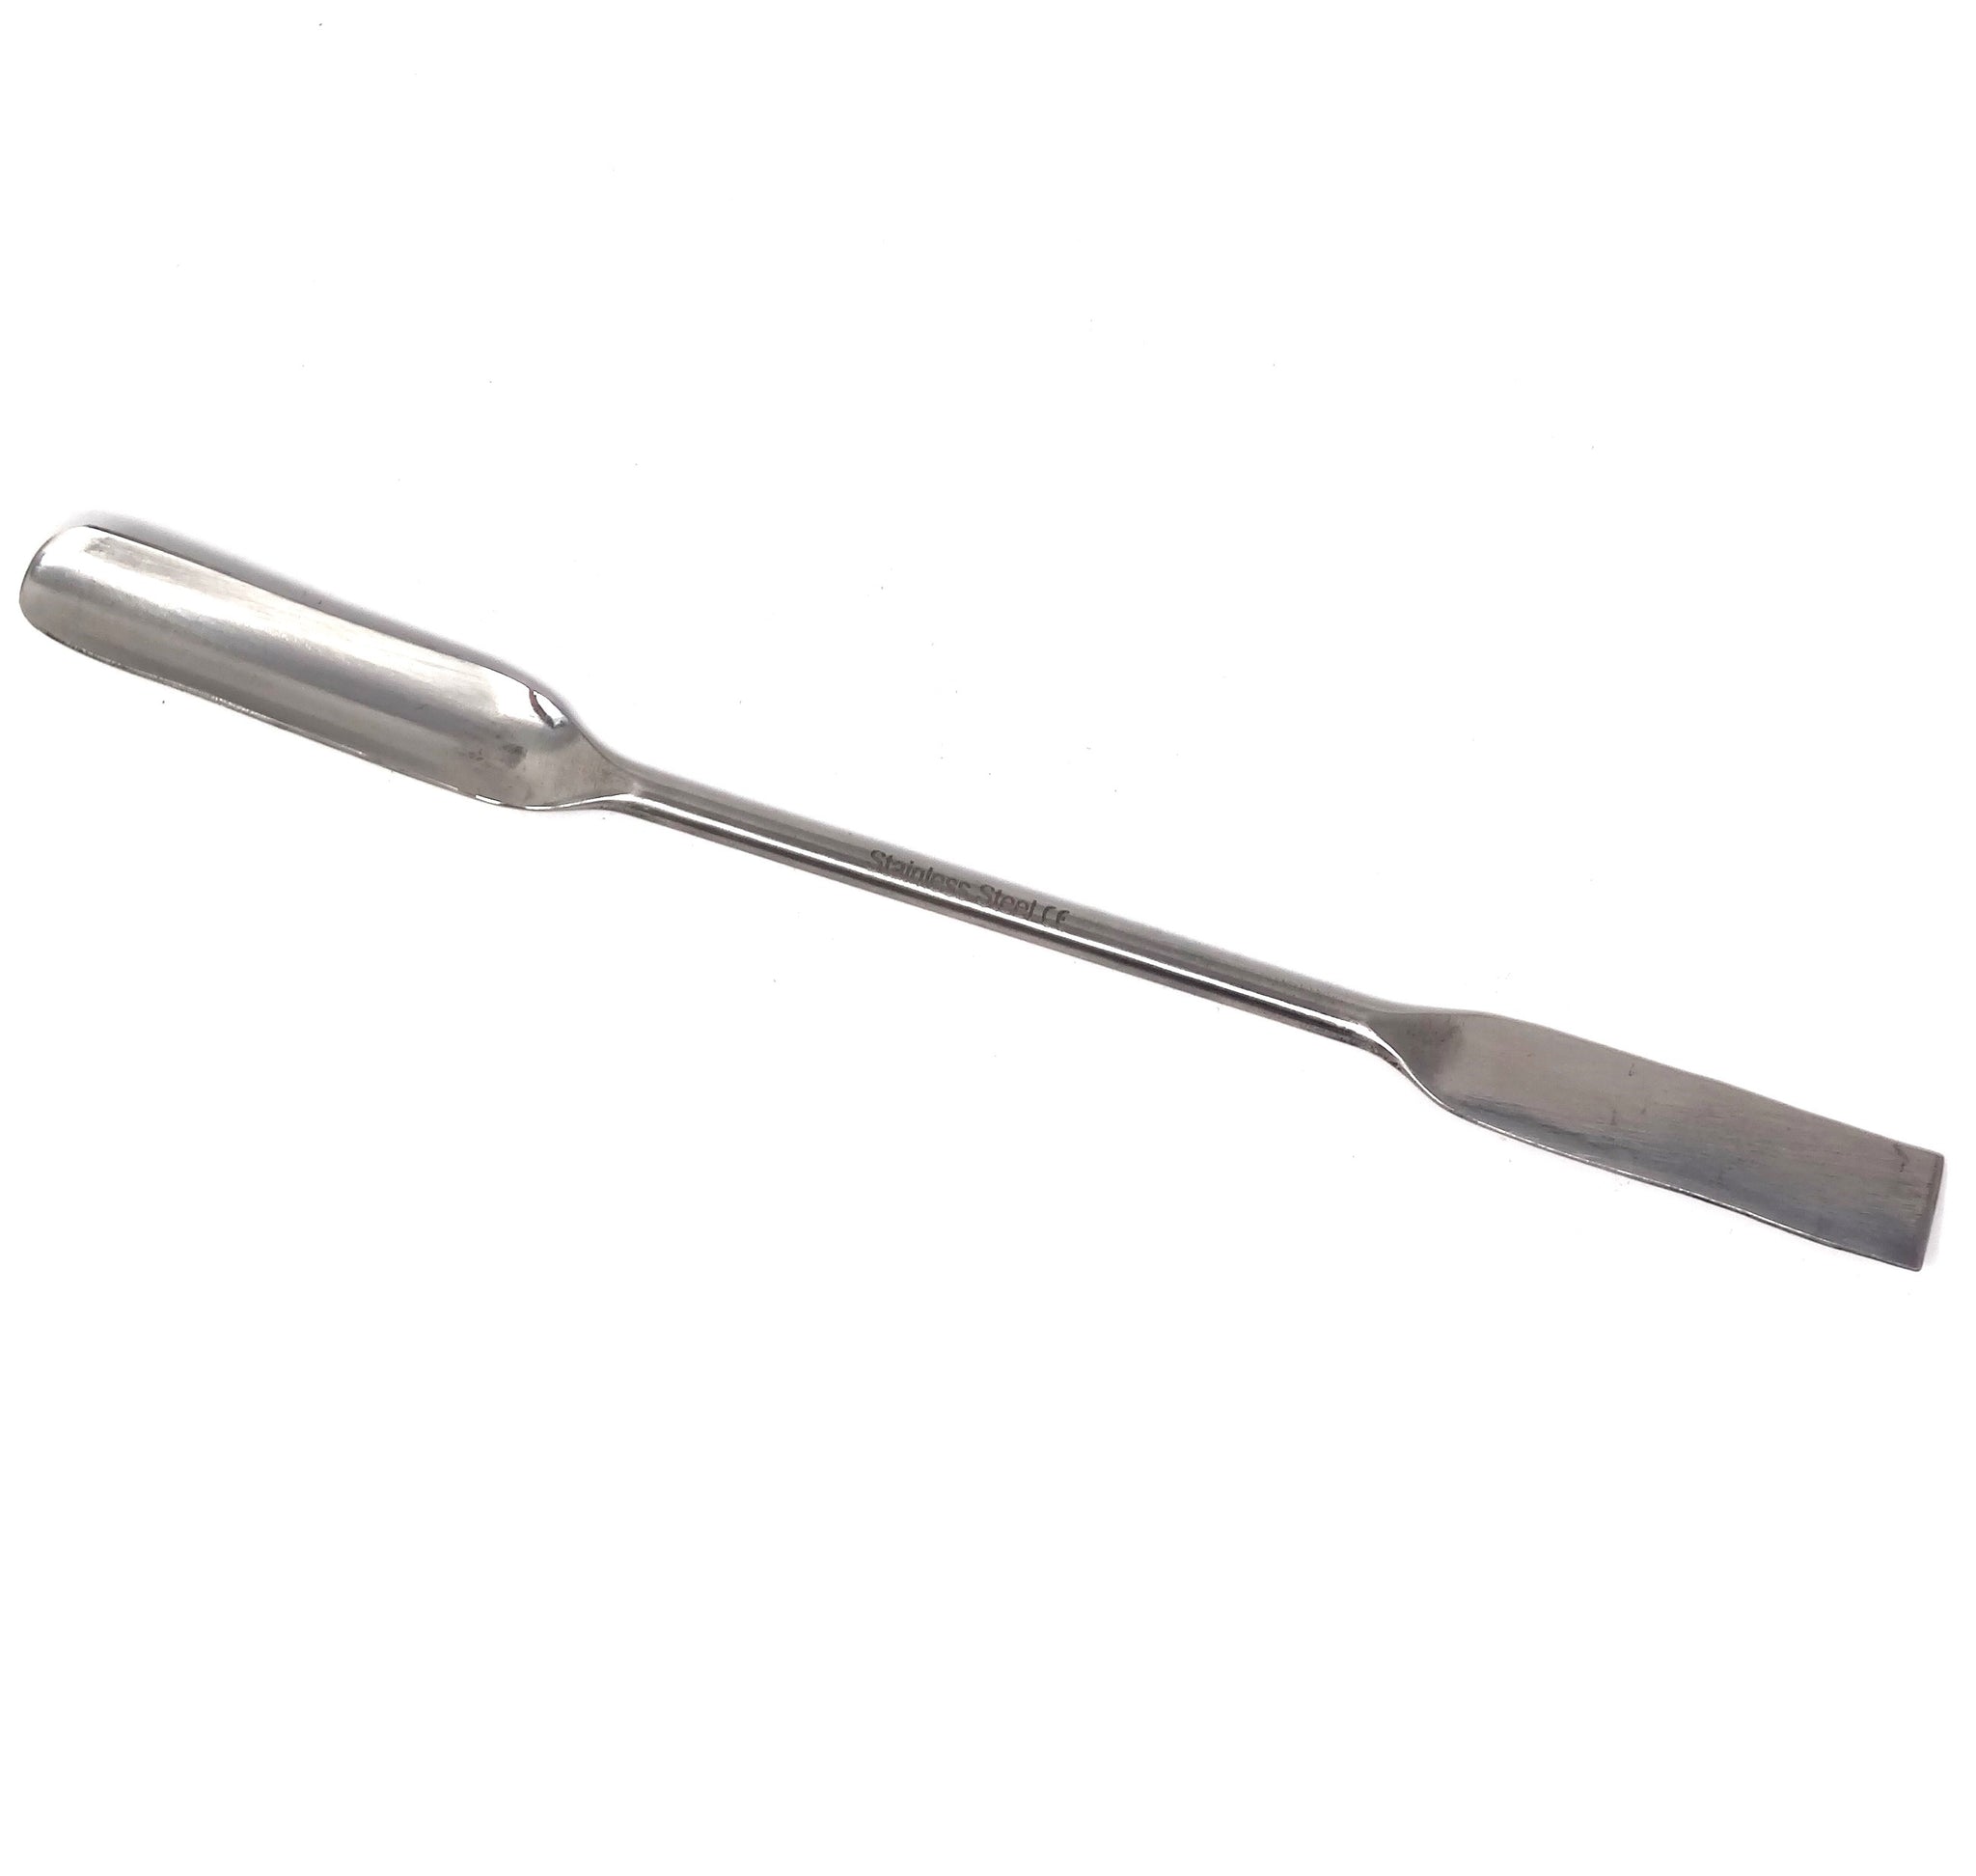 Micro Spatulas, One Scraper/Spoon End, L 6 1/2 in. (165 mm)